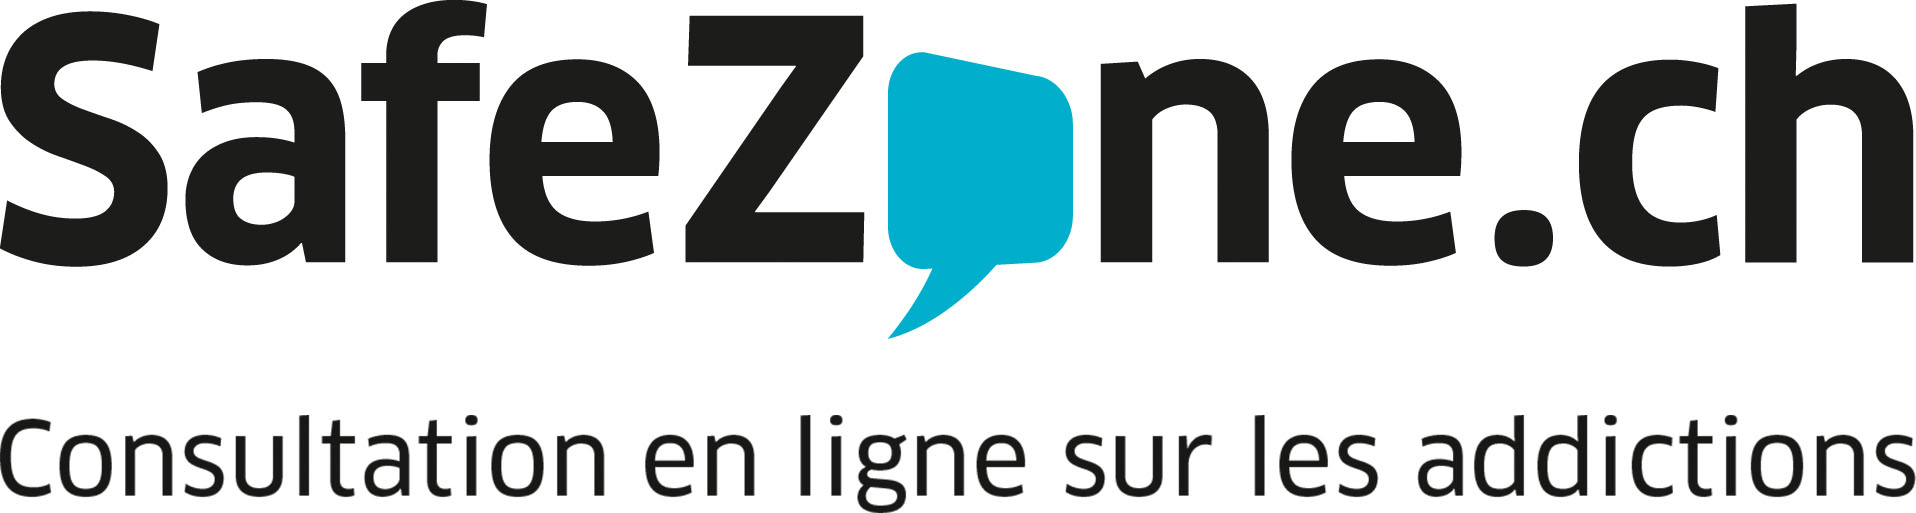 Liens Safezone.ch Consultation en ligne sur les addictions